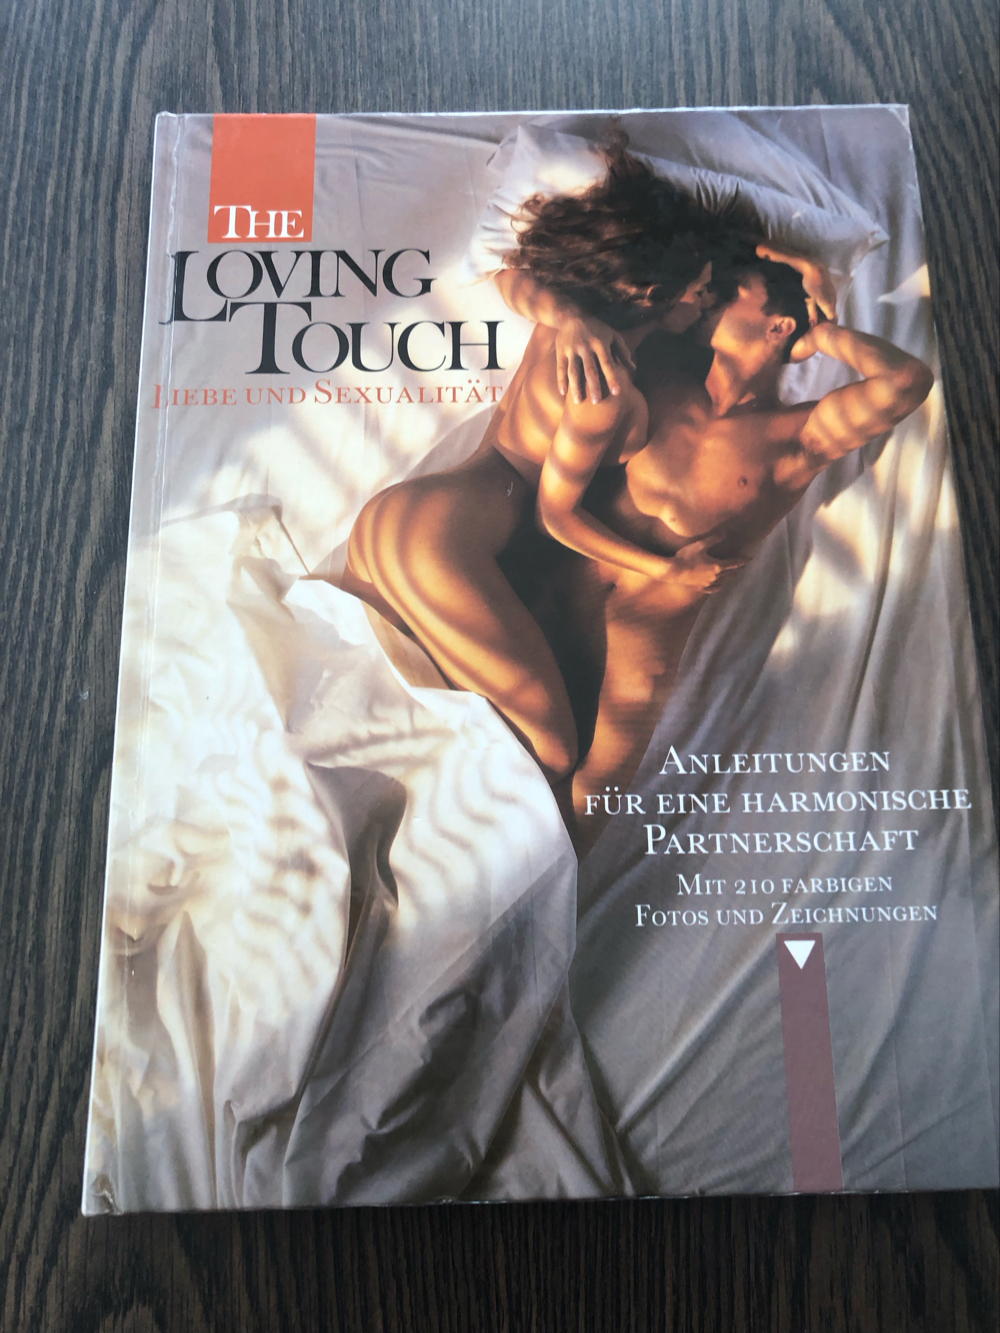 The loving touch: Liebe und Sexualität